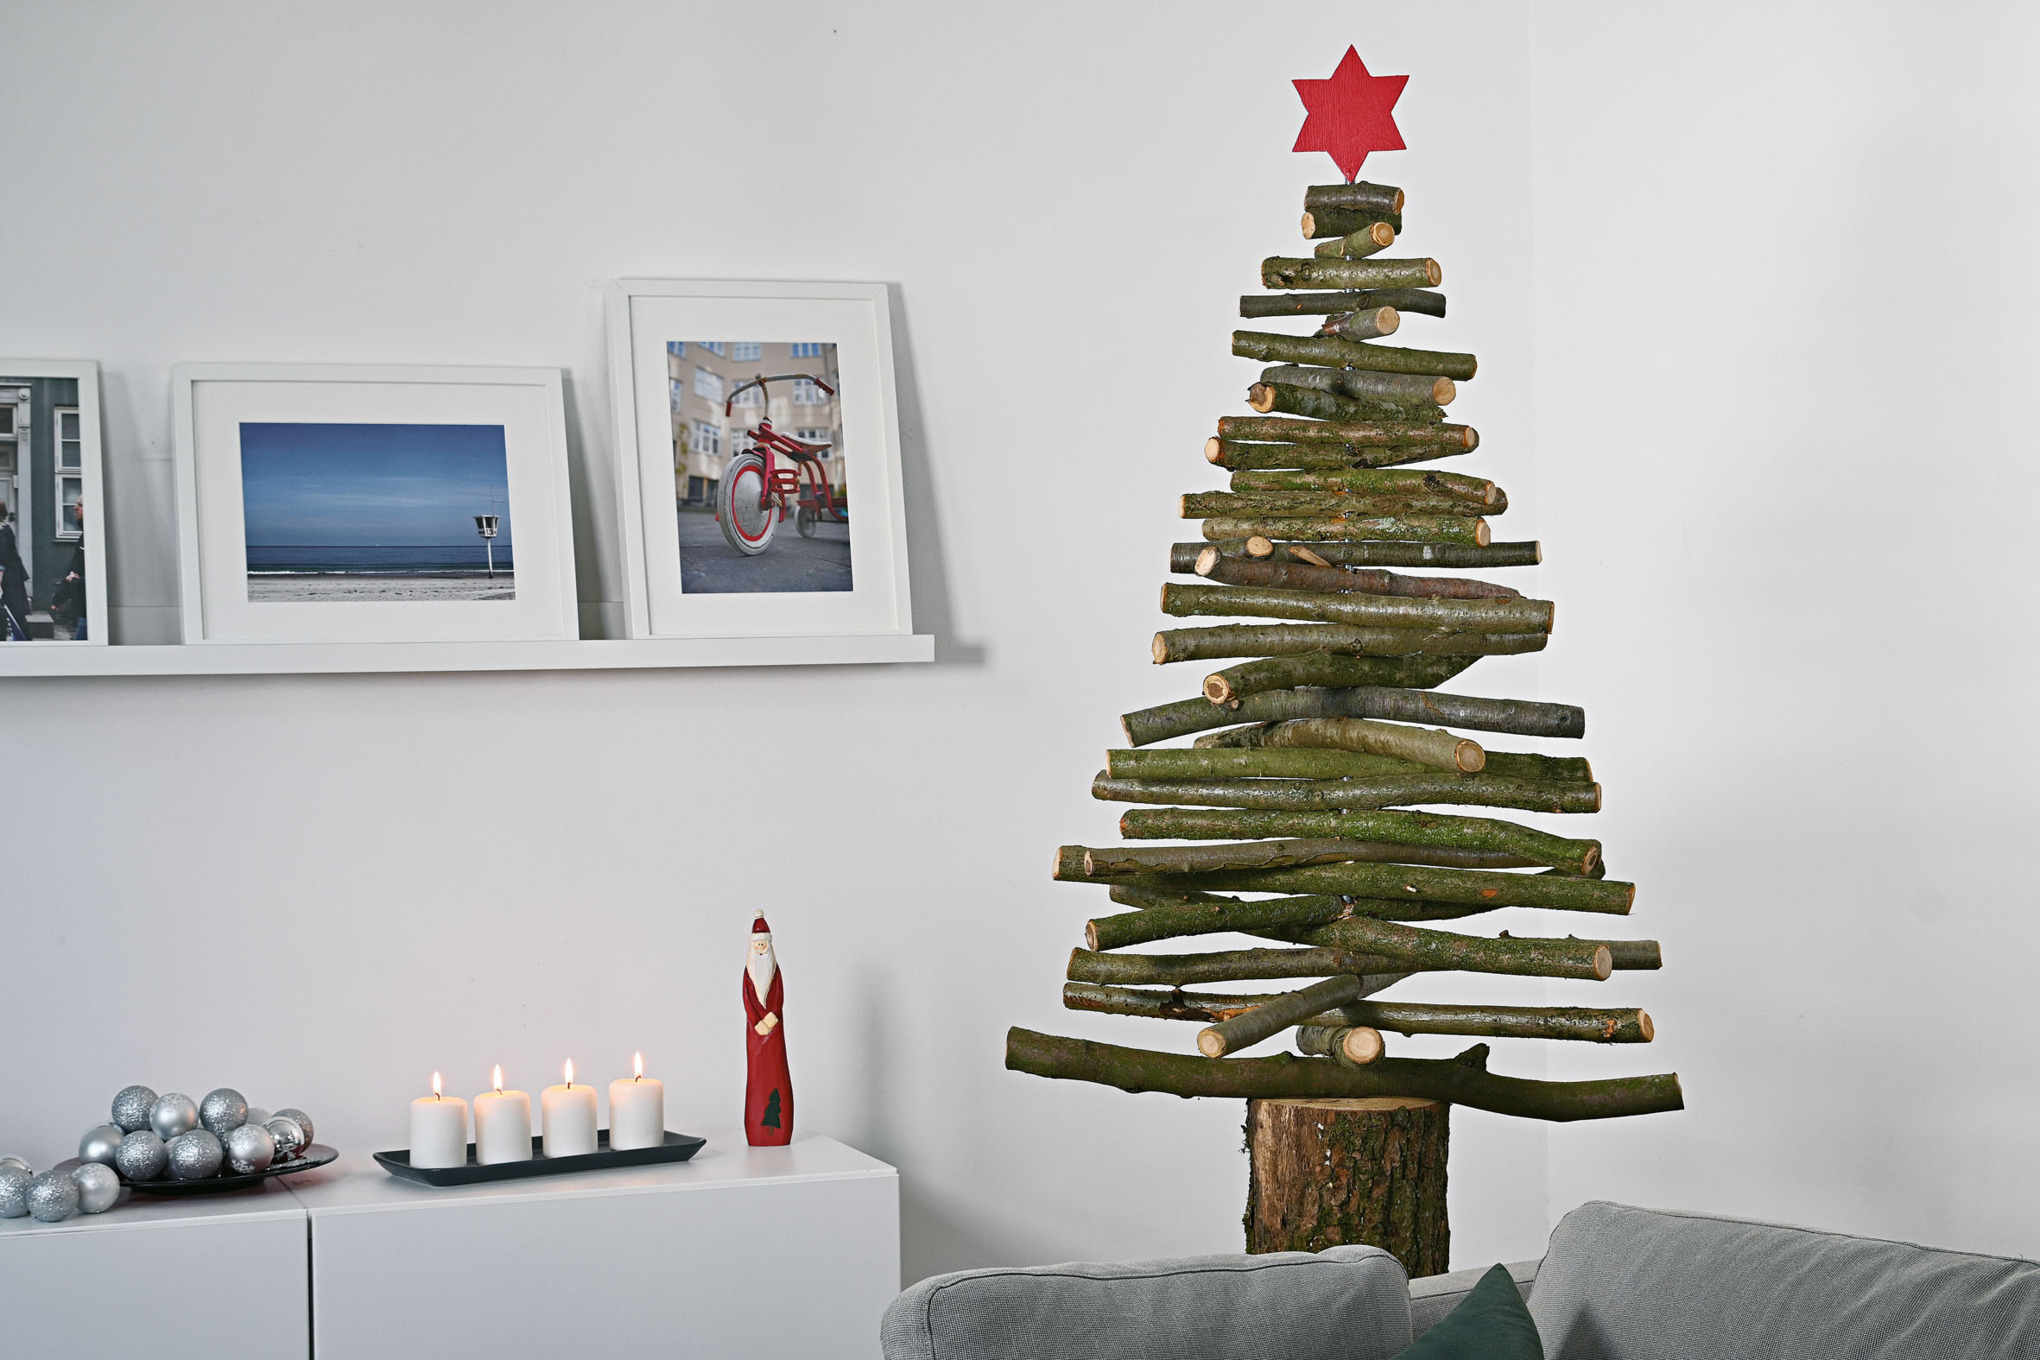 Selbstgebauter Weihnachtsbaum aus Holzzweigen mit rotem Stern auf der Spitze in einem weihnachtlich geschmückten Innenraum